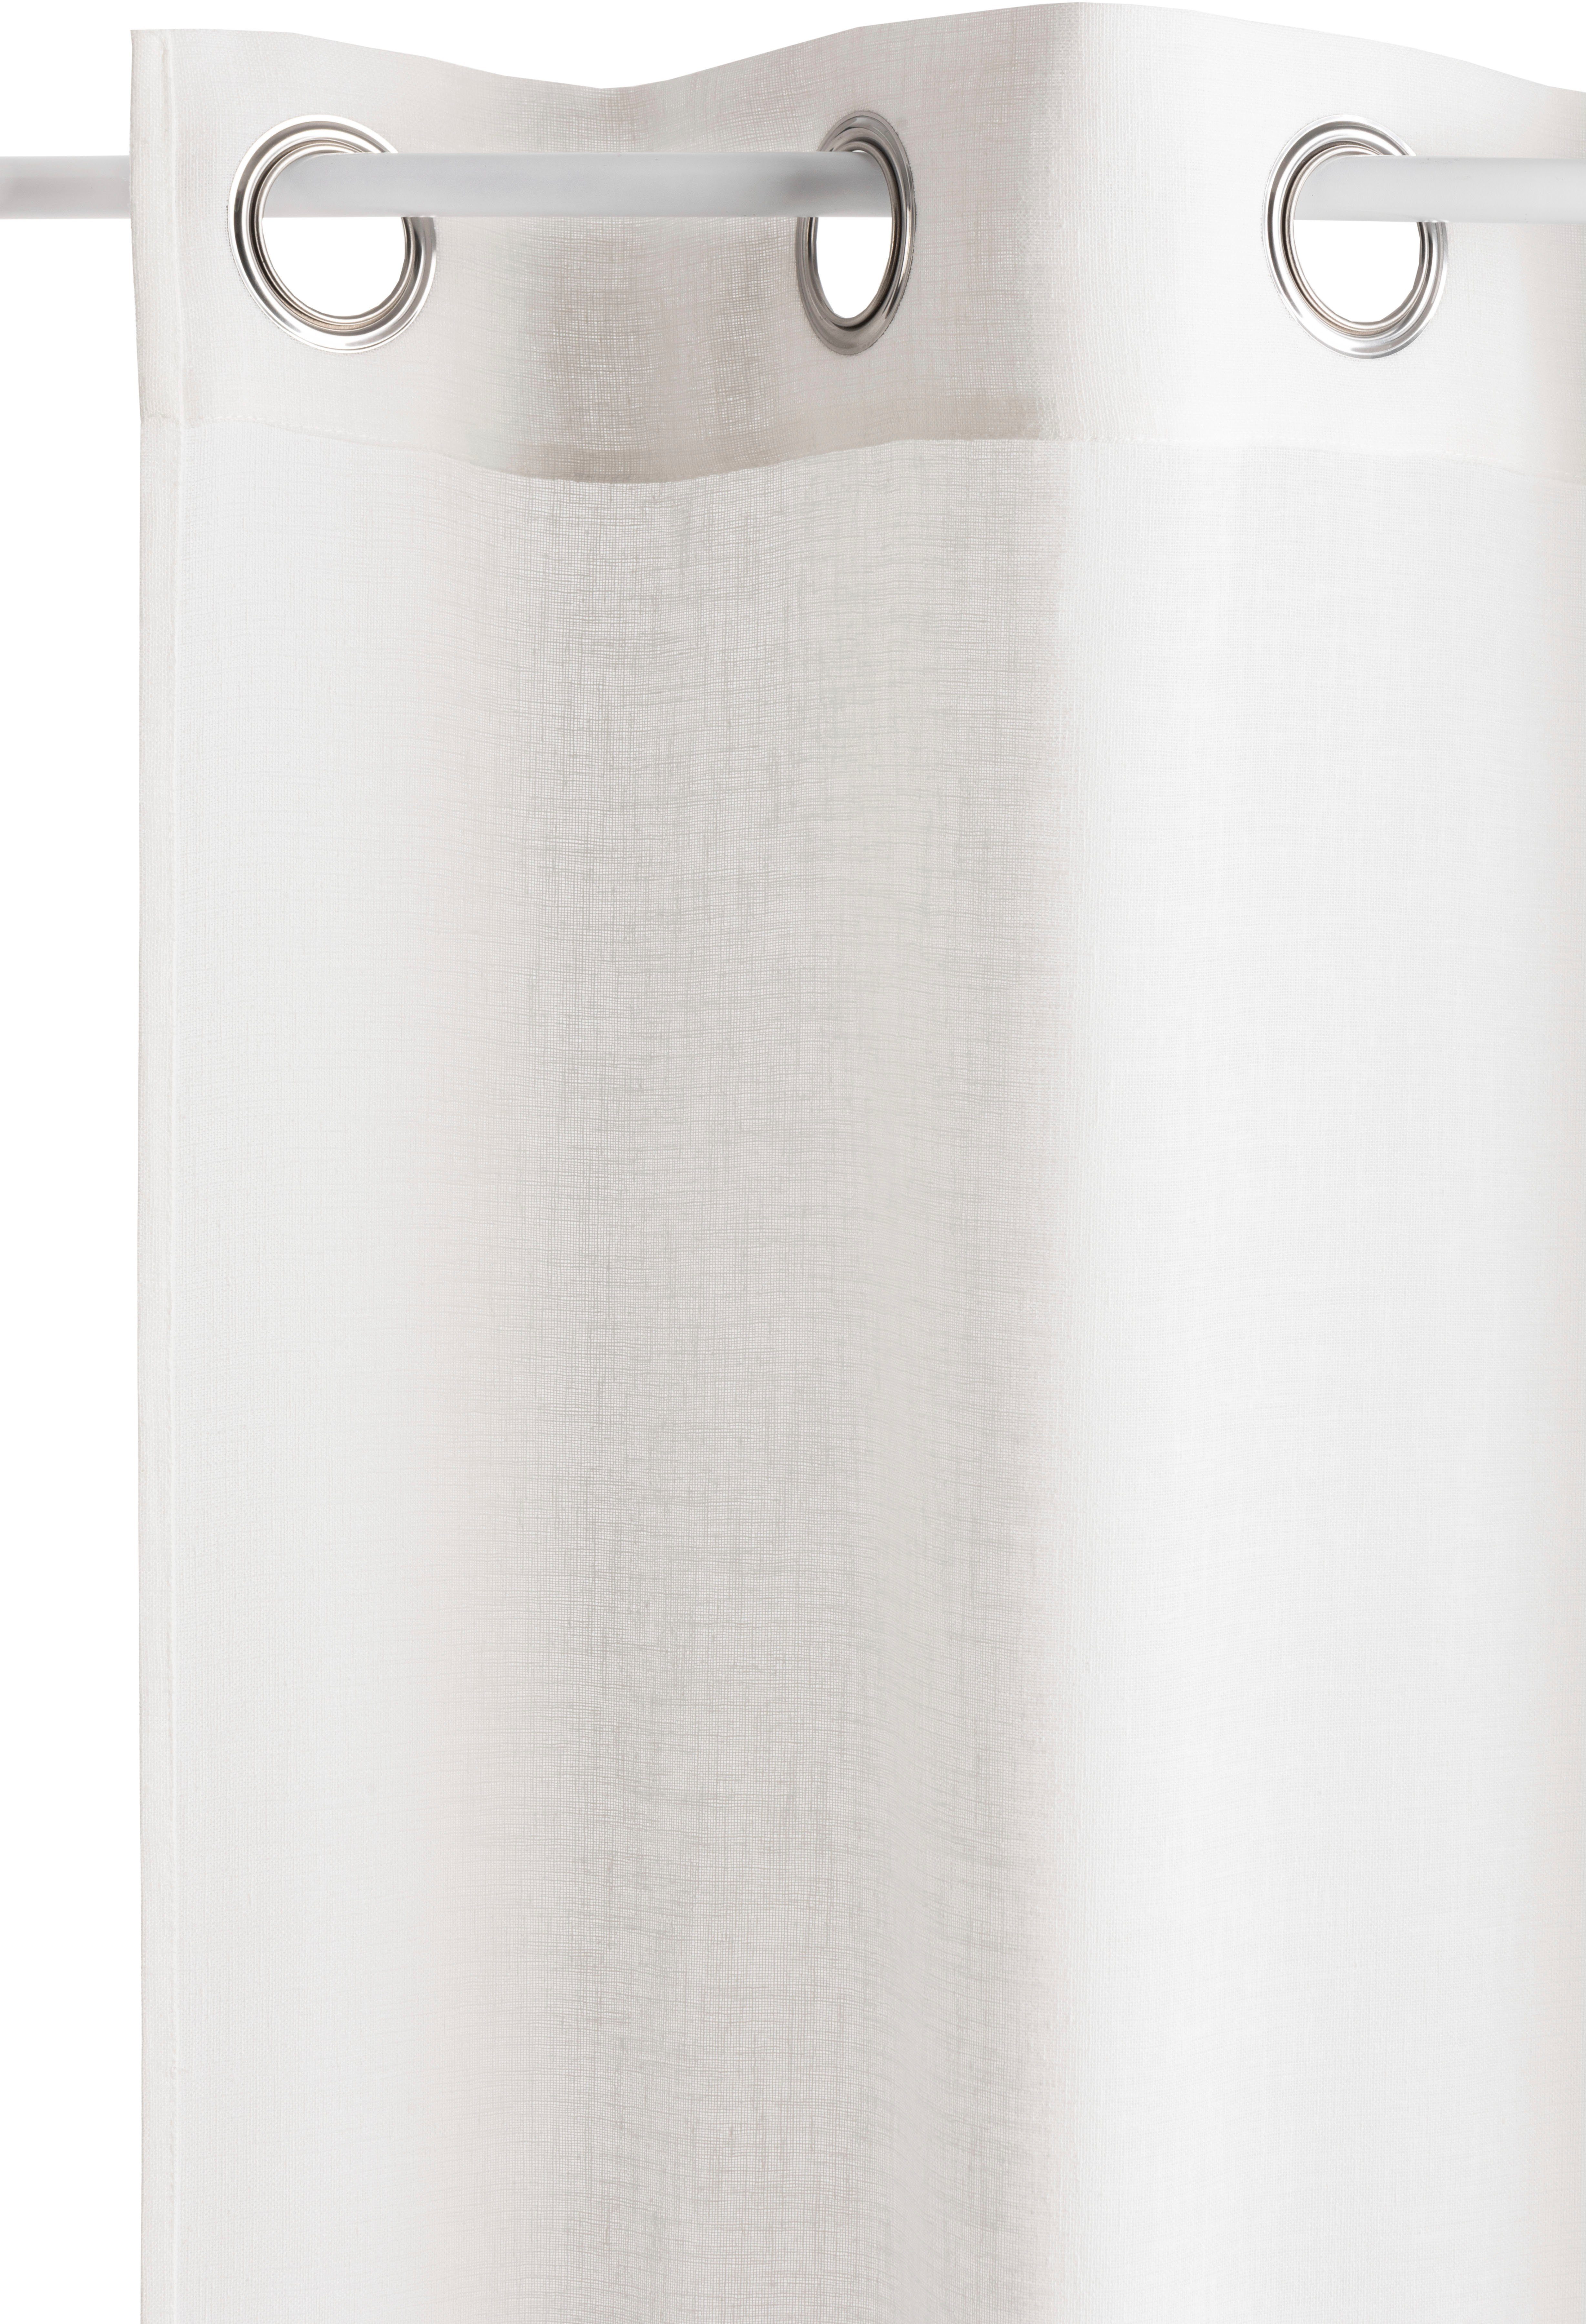 Gardine Jori, andas, Ösen (1 St), Größen verschiedene halbtransparent, weiß/sand halbtransparent, monochrom